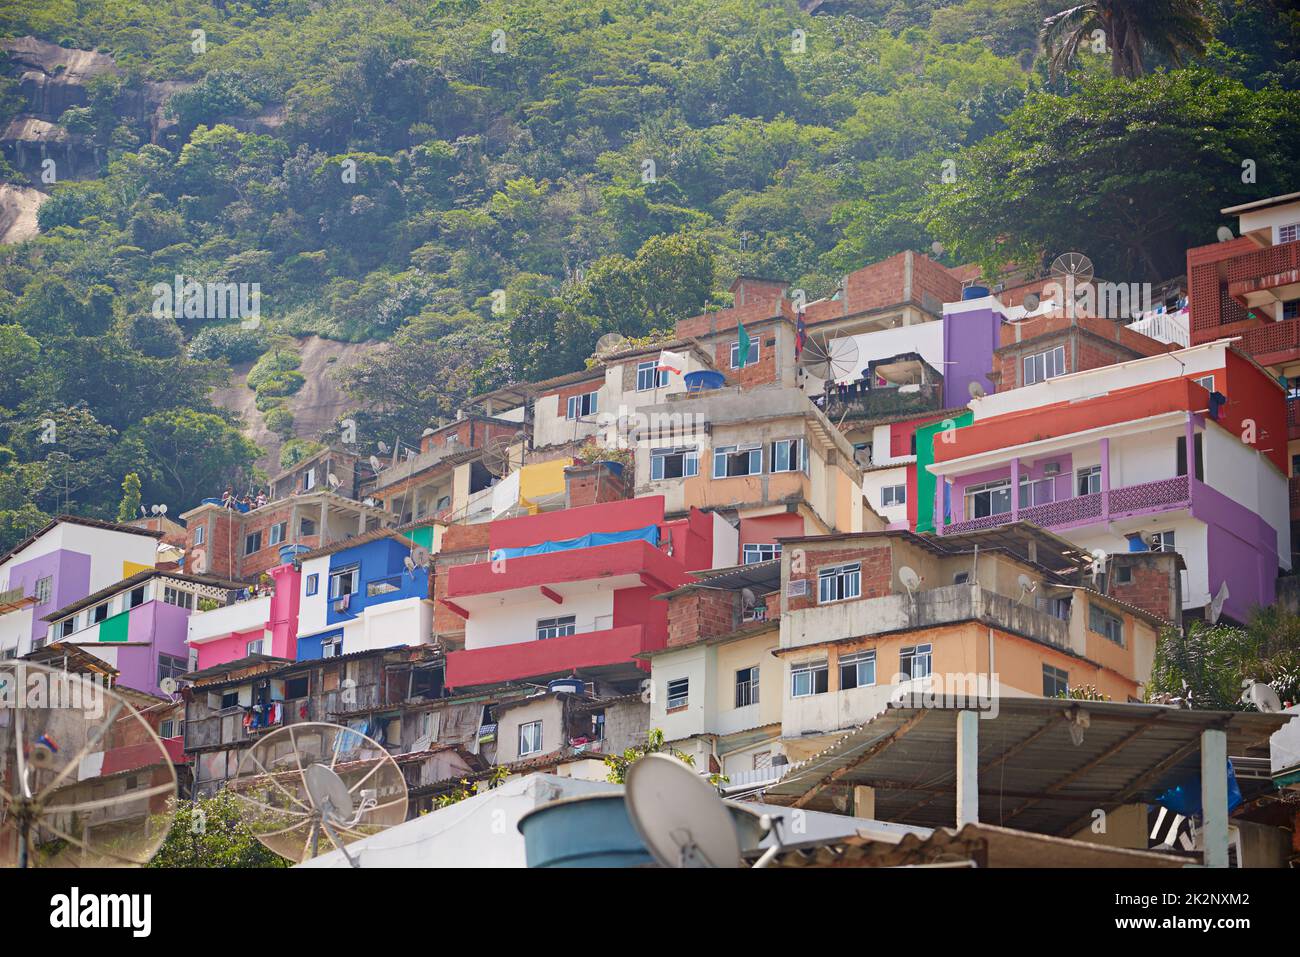 Alojamiento en la montaña. Foto de barrios de tugurios en una ladera en Río de Janeiro, Brasil. Foto de stock